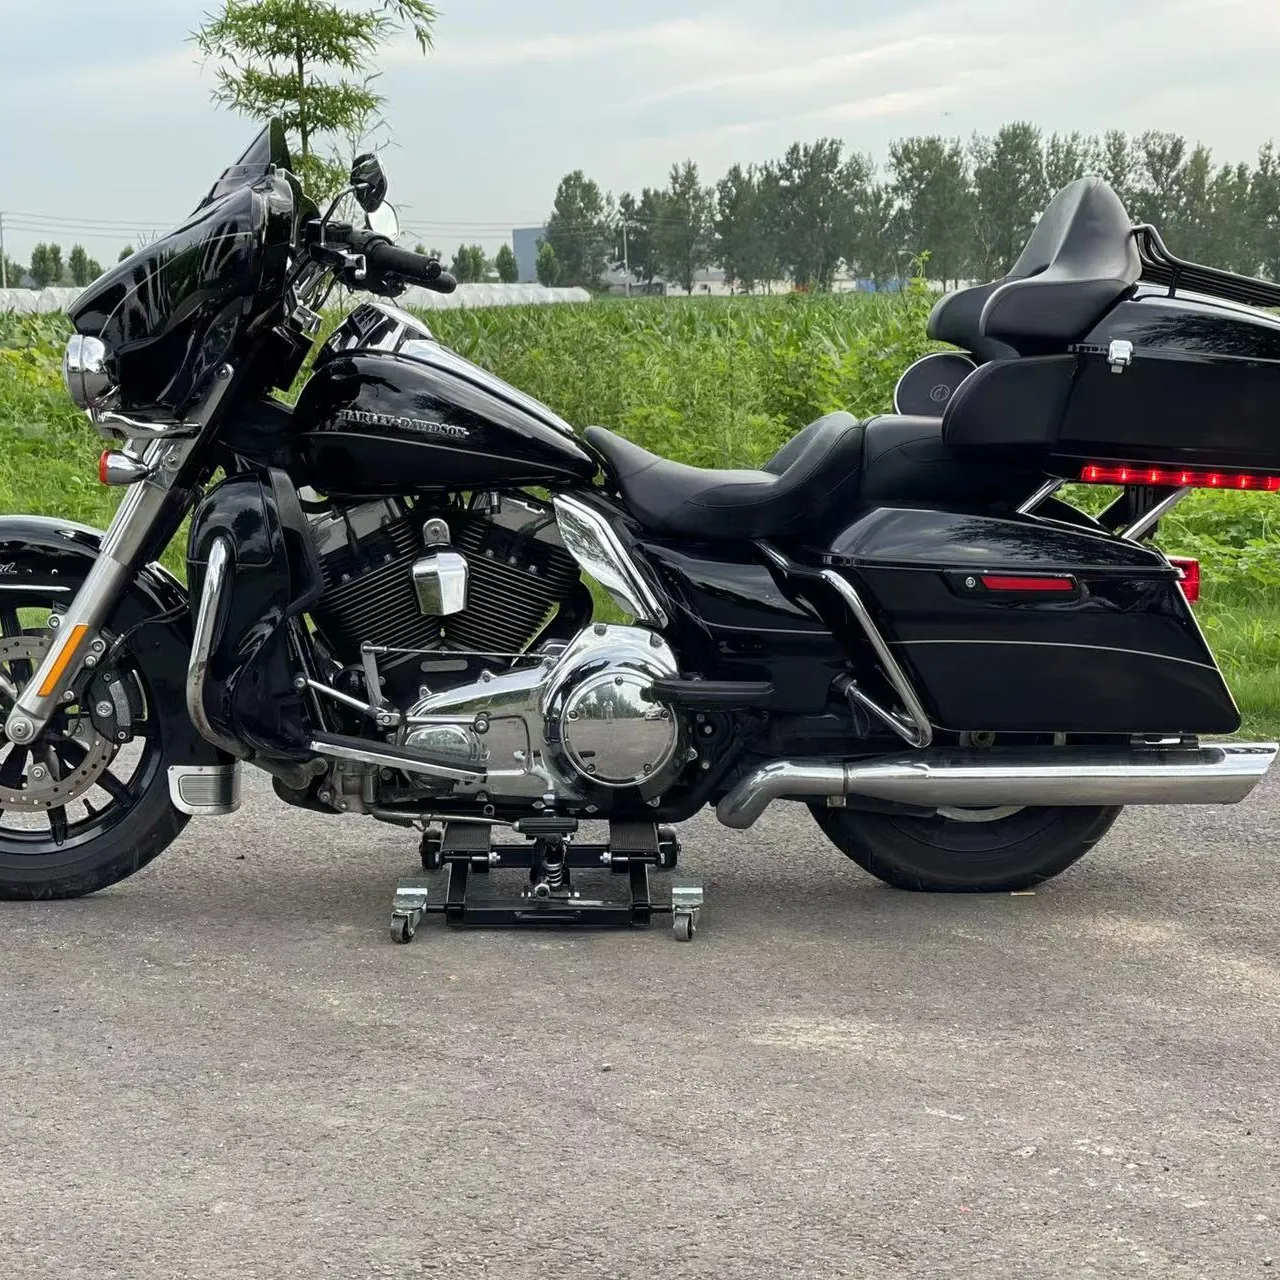 Oferecer amostra Cruiser motocicletas gasolina motocicleta cauda sacos Davidson Vrod rodas